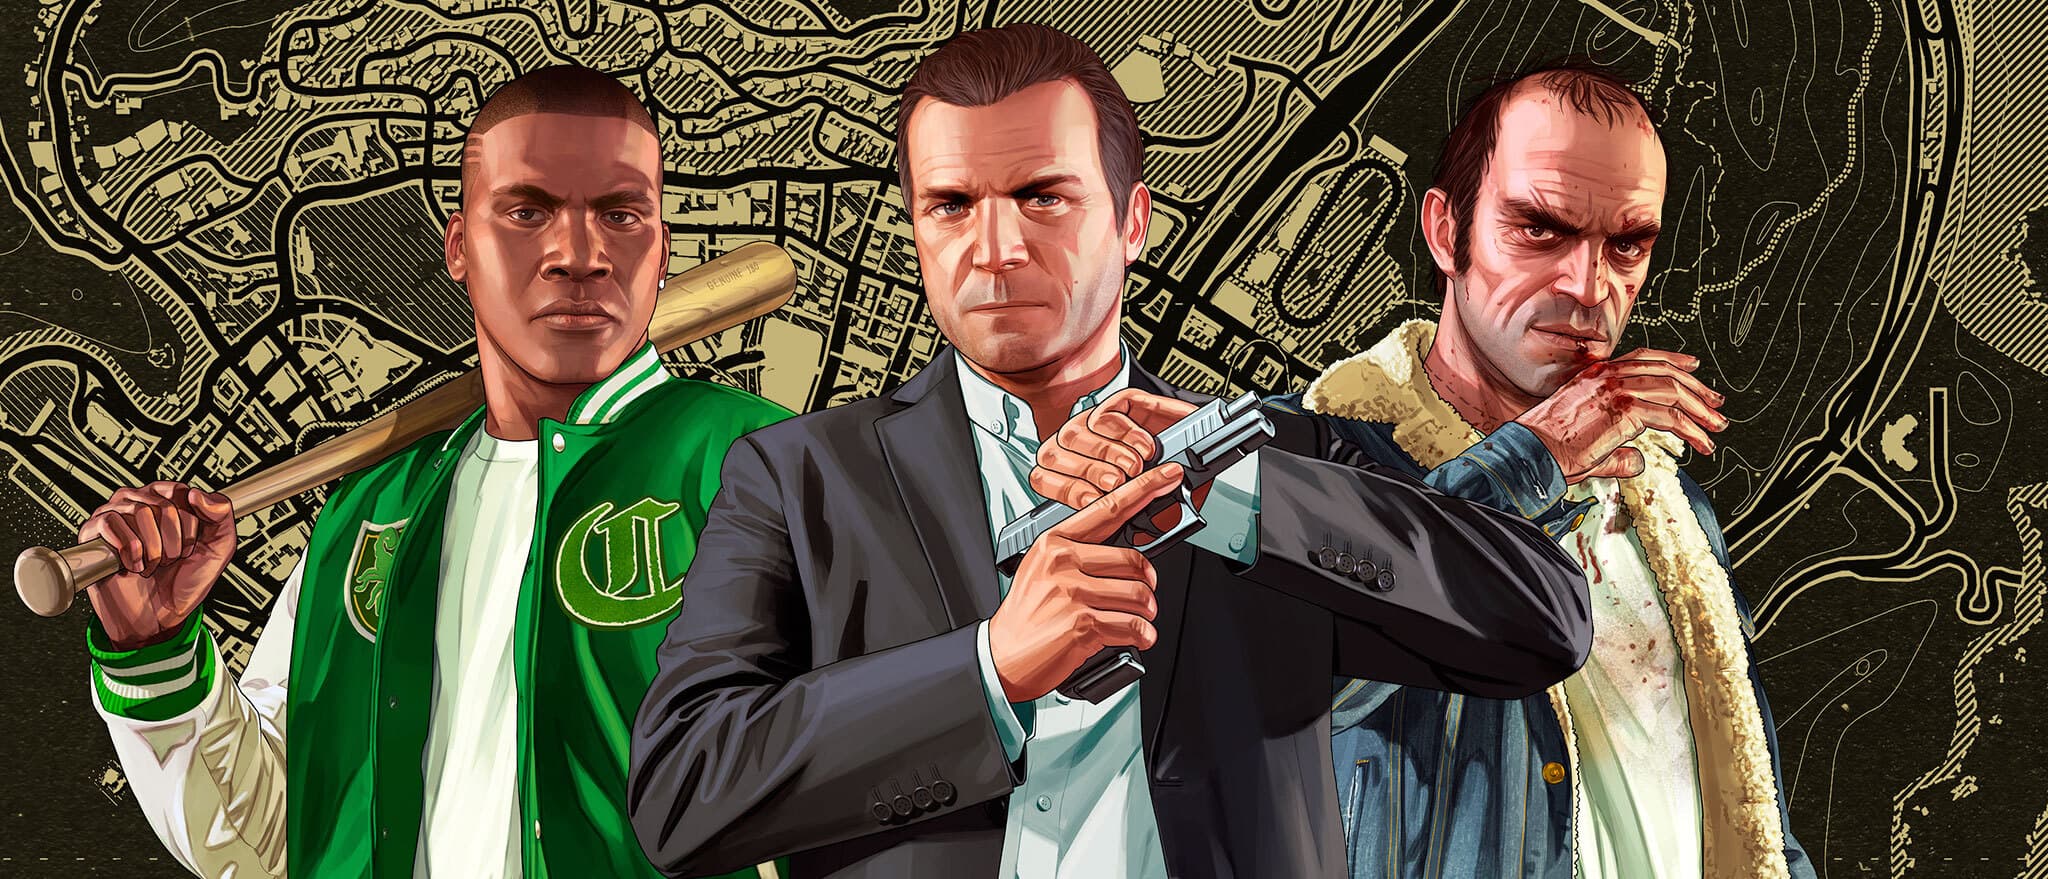 JOGO GTA V - XBOX 360 - Game Grand Theft Auto V - Loja Cyber Z